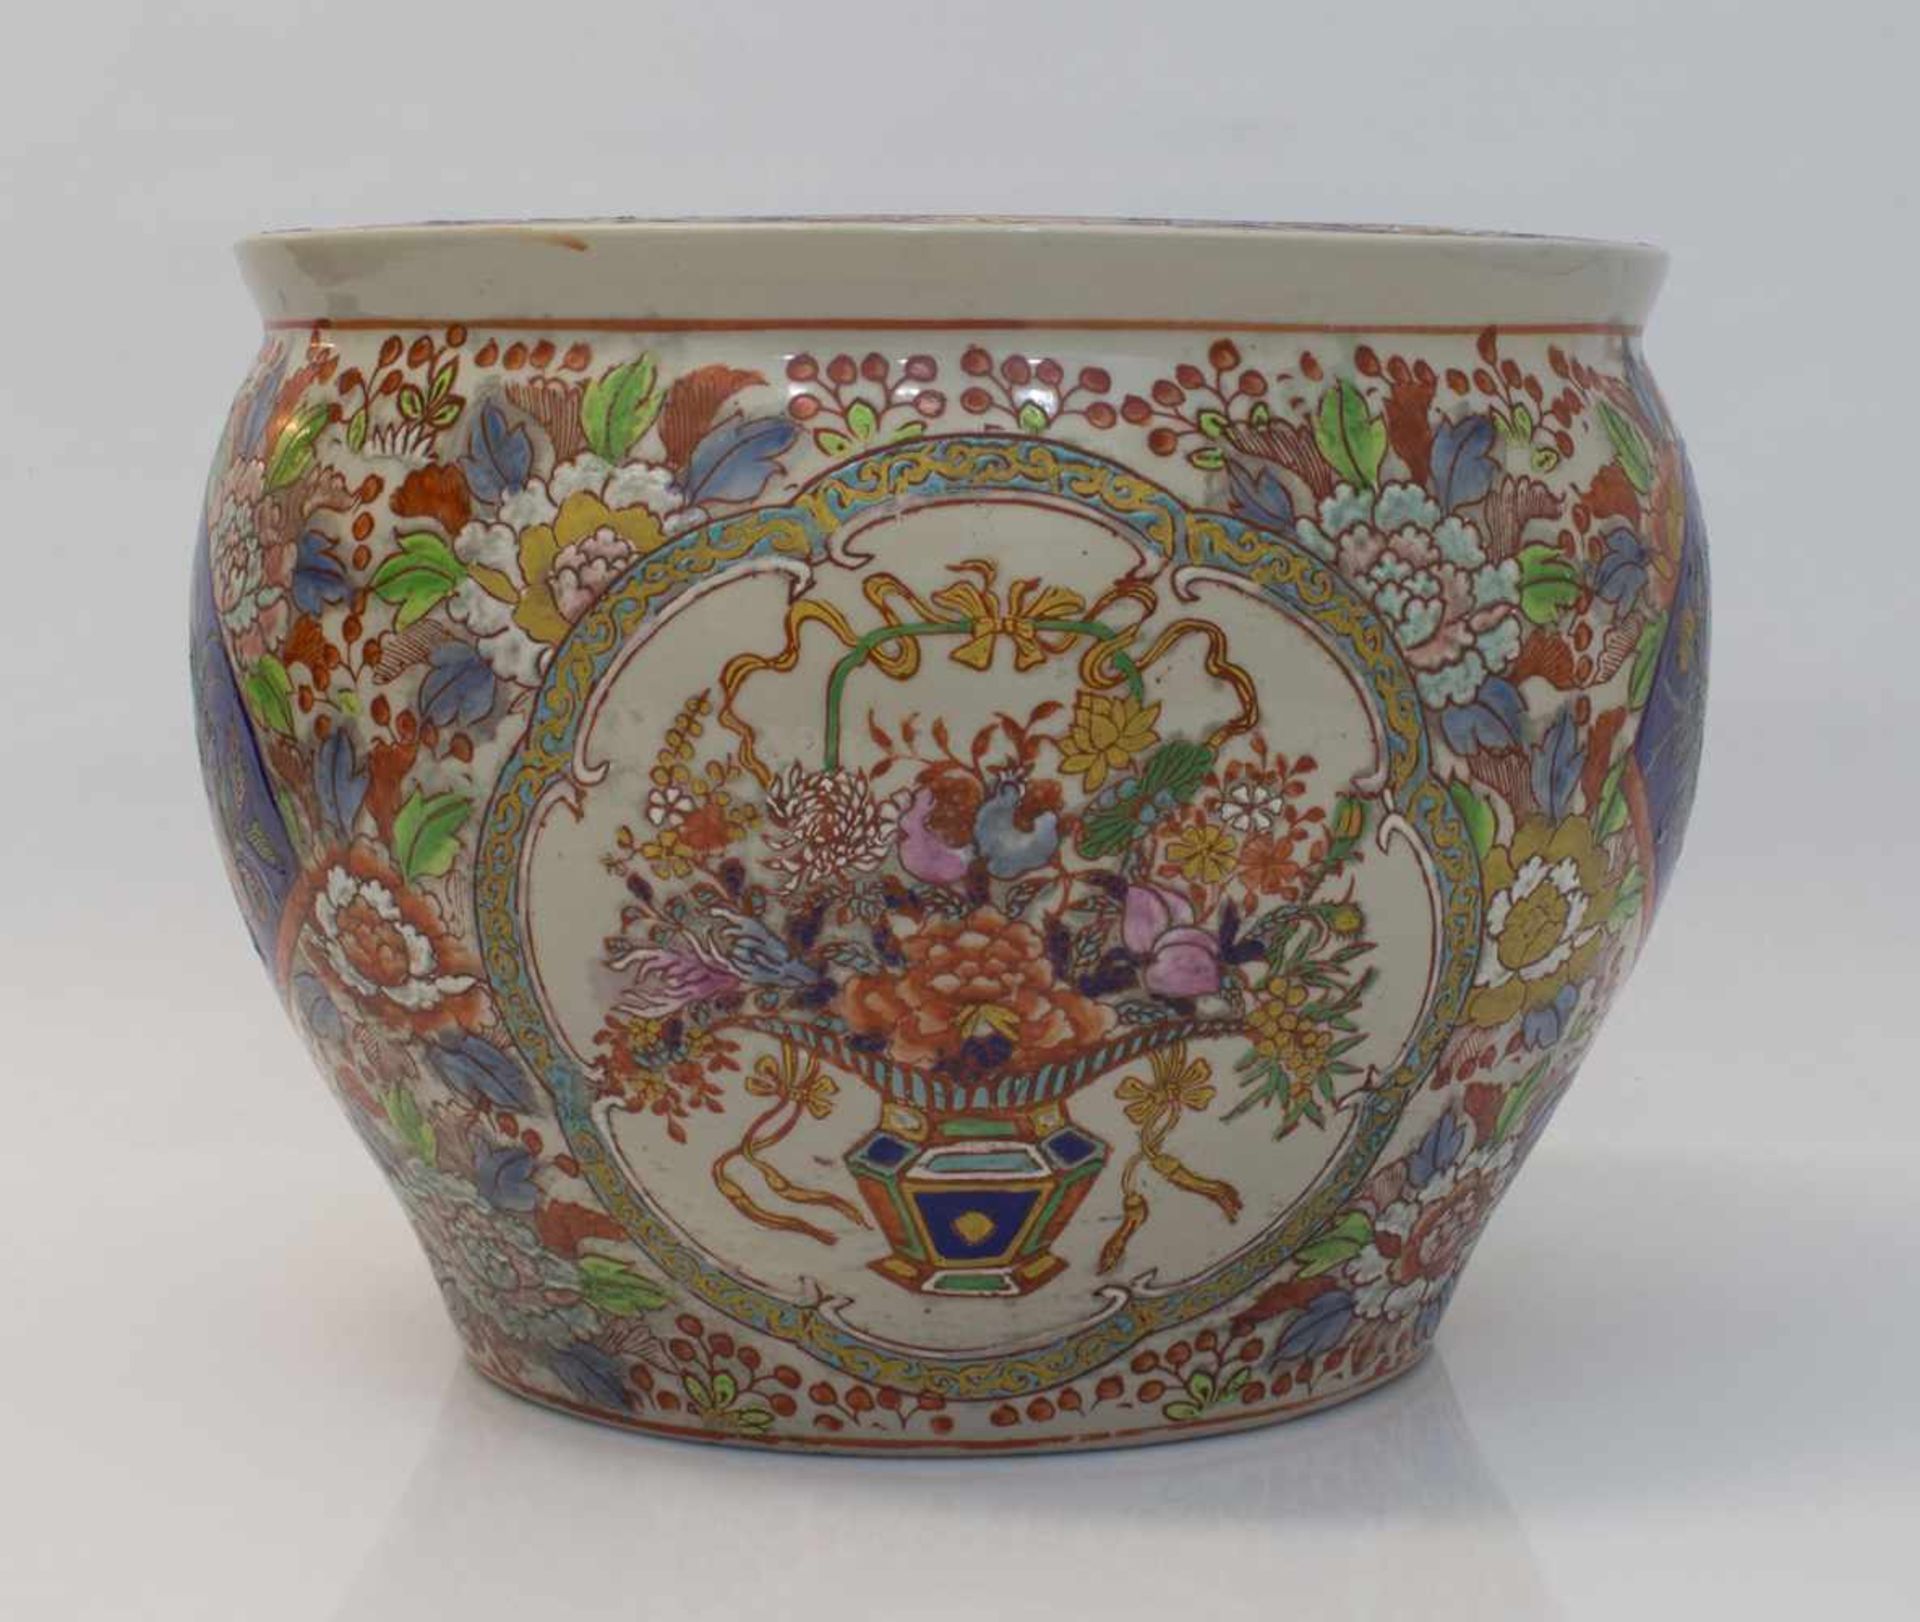 ÜbertopfChina Anfang 20. Jh., Keramik mit Ritzdekor und aufwändiger Handmalerei, am Boden gemarkt, - Bild 2 aus 4